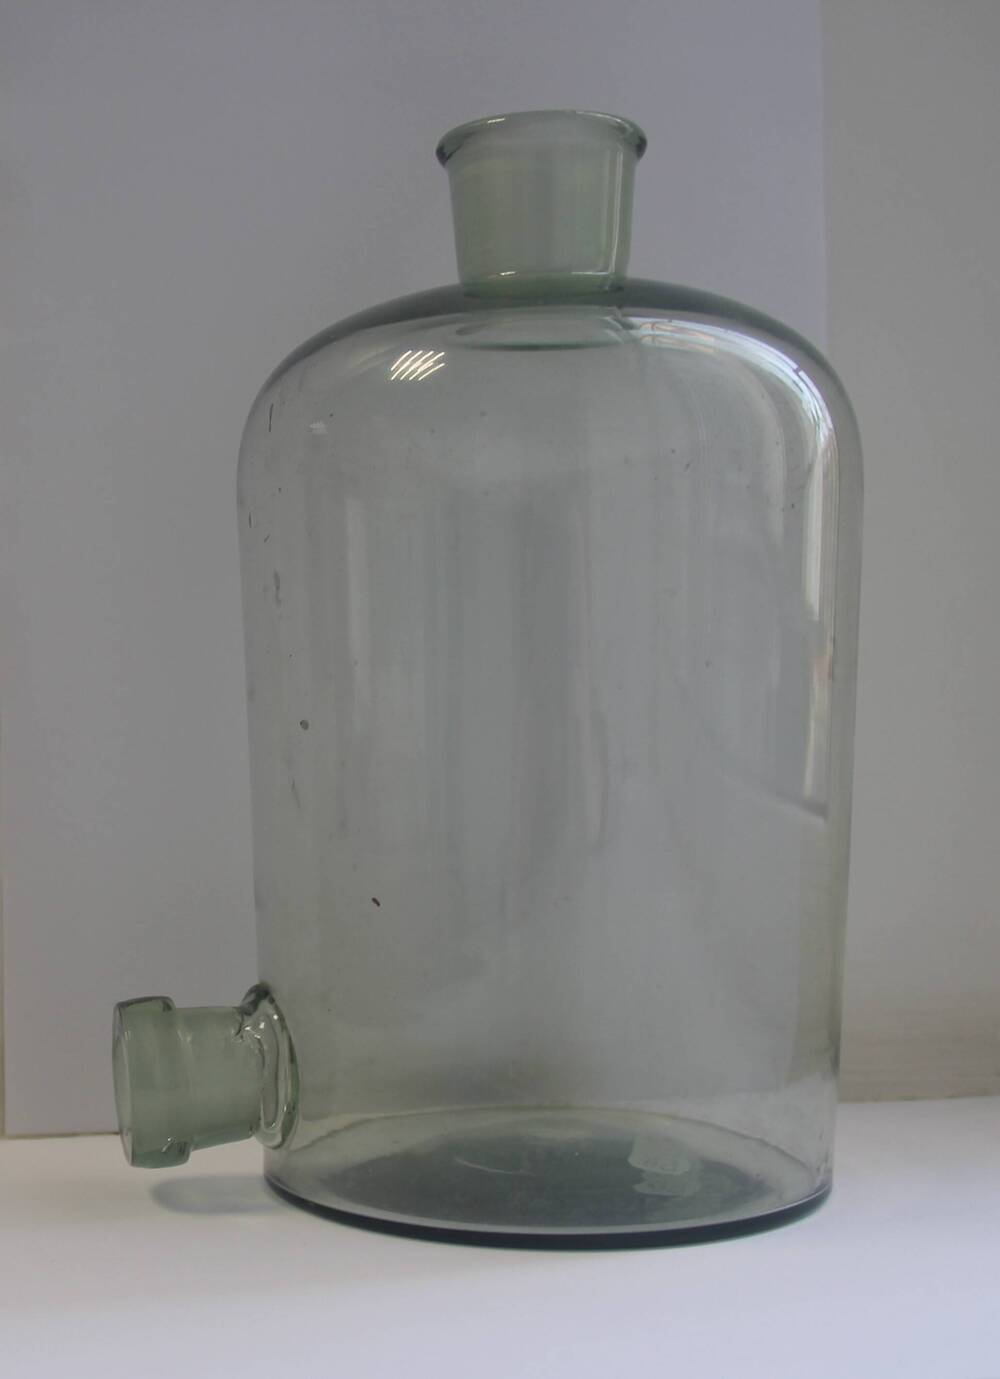 Склянка-аспиратор лабораторная (бутыль Вульфа) объёмом 2 литра. ГОСТ 21400-75. 1970-е годы.